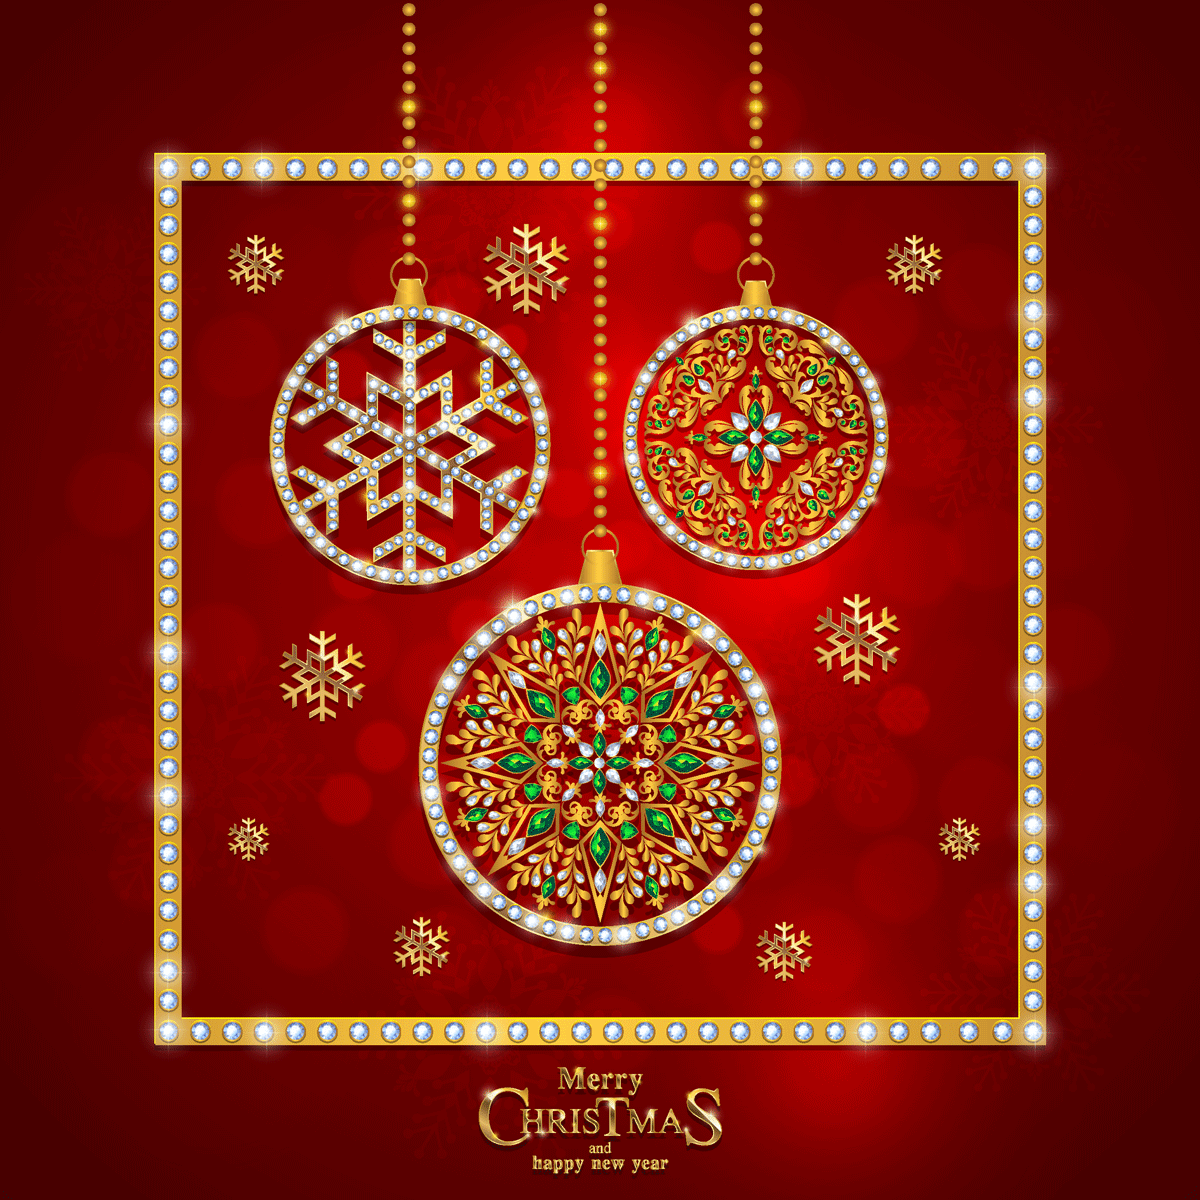 红色幸福的圣诞节元素图案集合 Red Happy Christmas Elements Pattern Collection插图